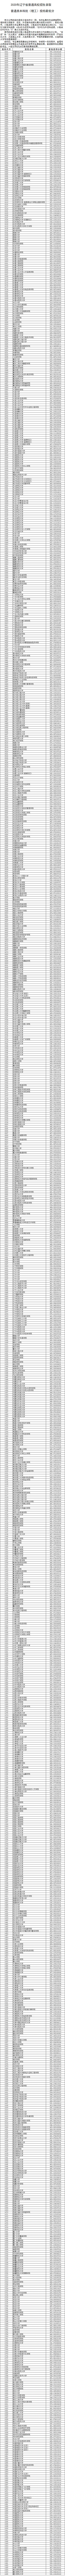 2020辽宁本科批投档最低分及院校代码一览表